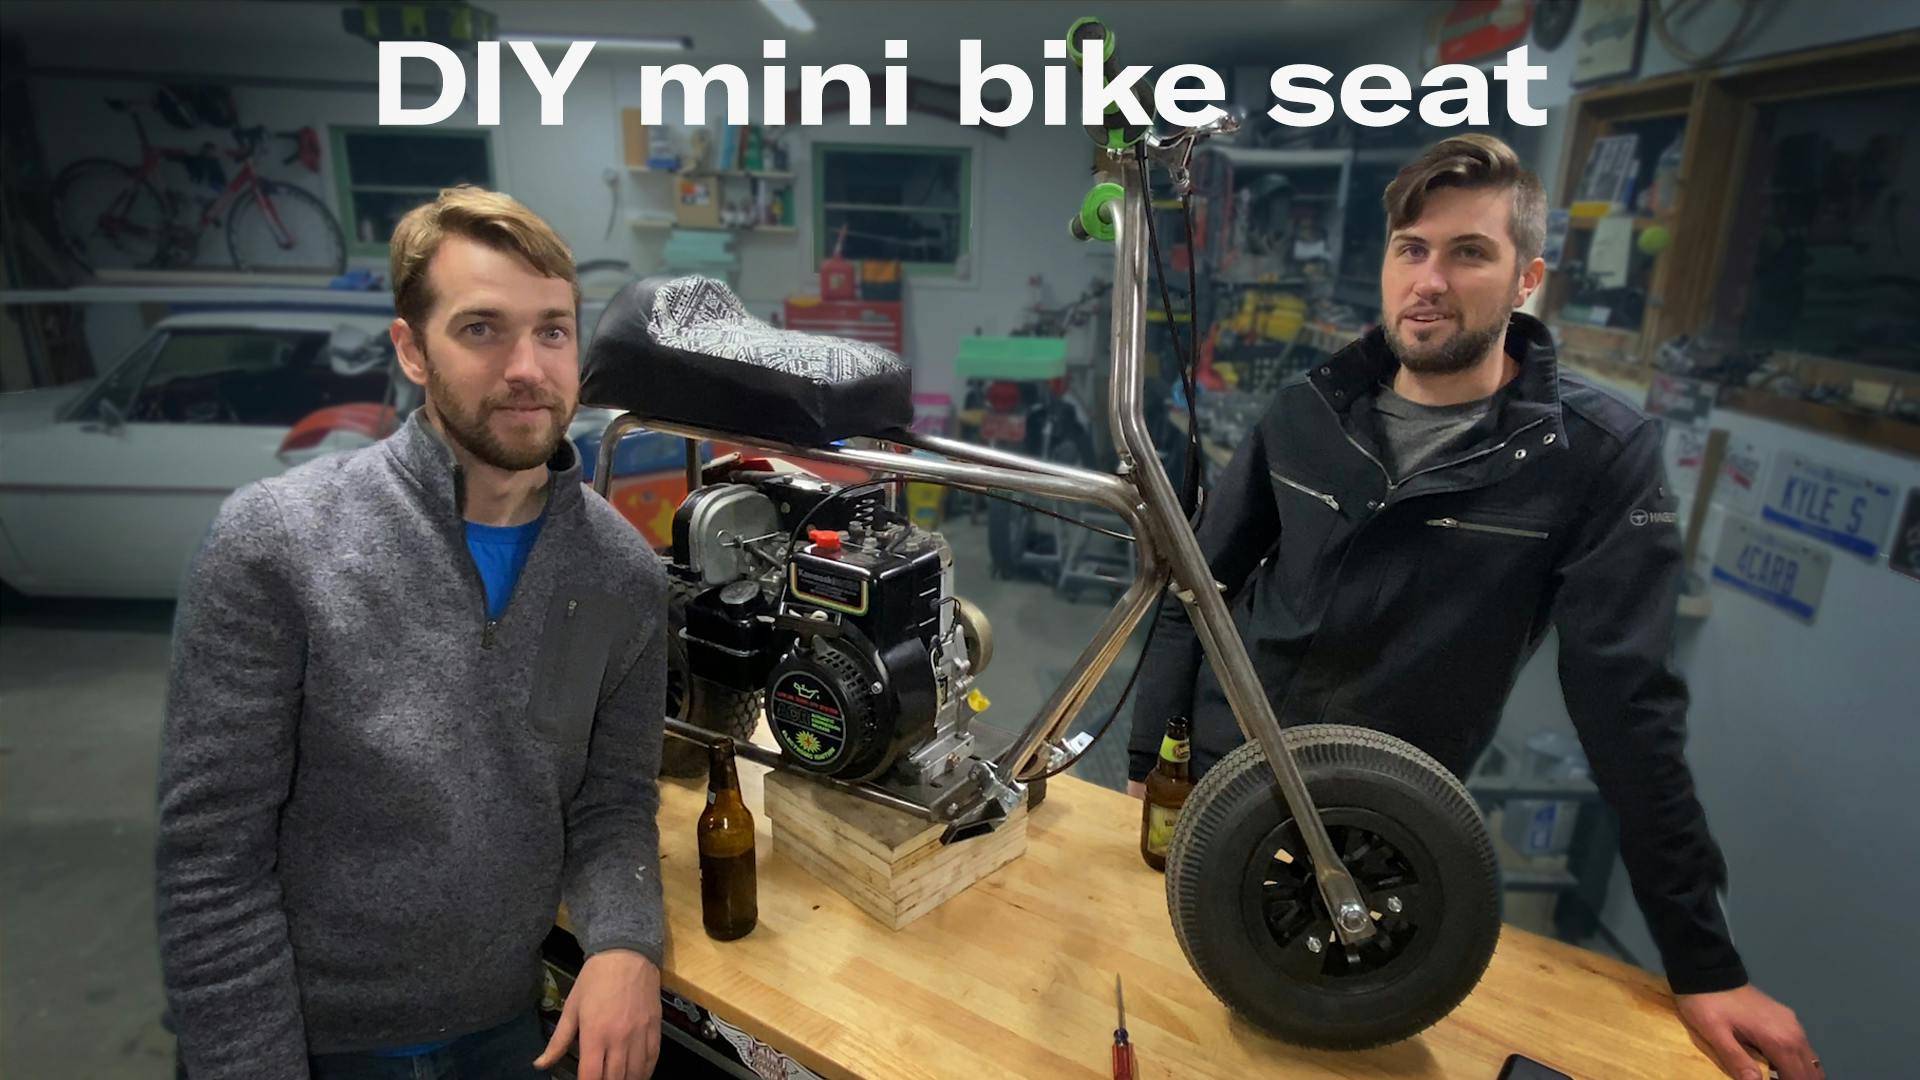 Kyle's garage mini bike seat